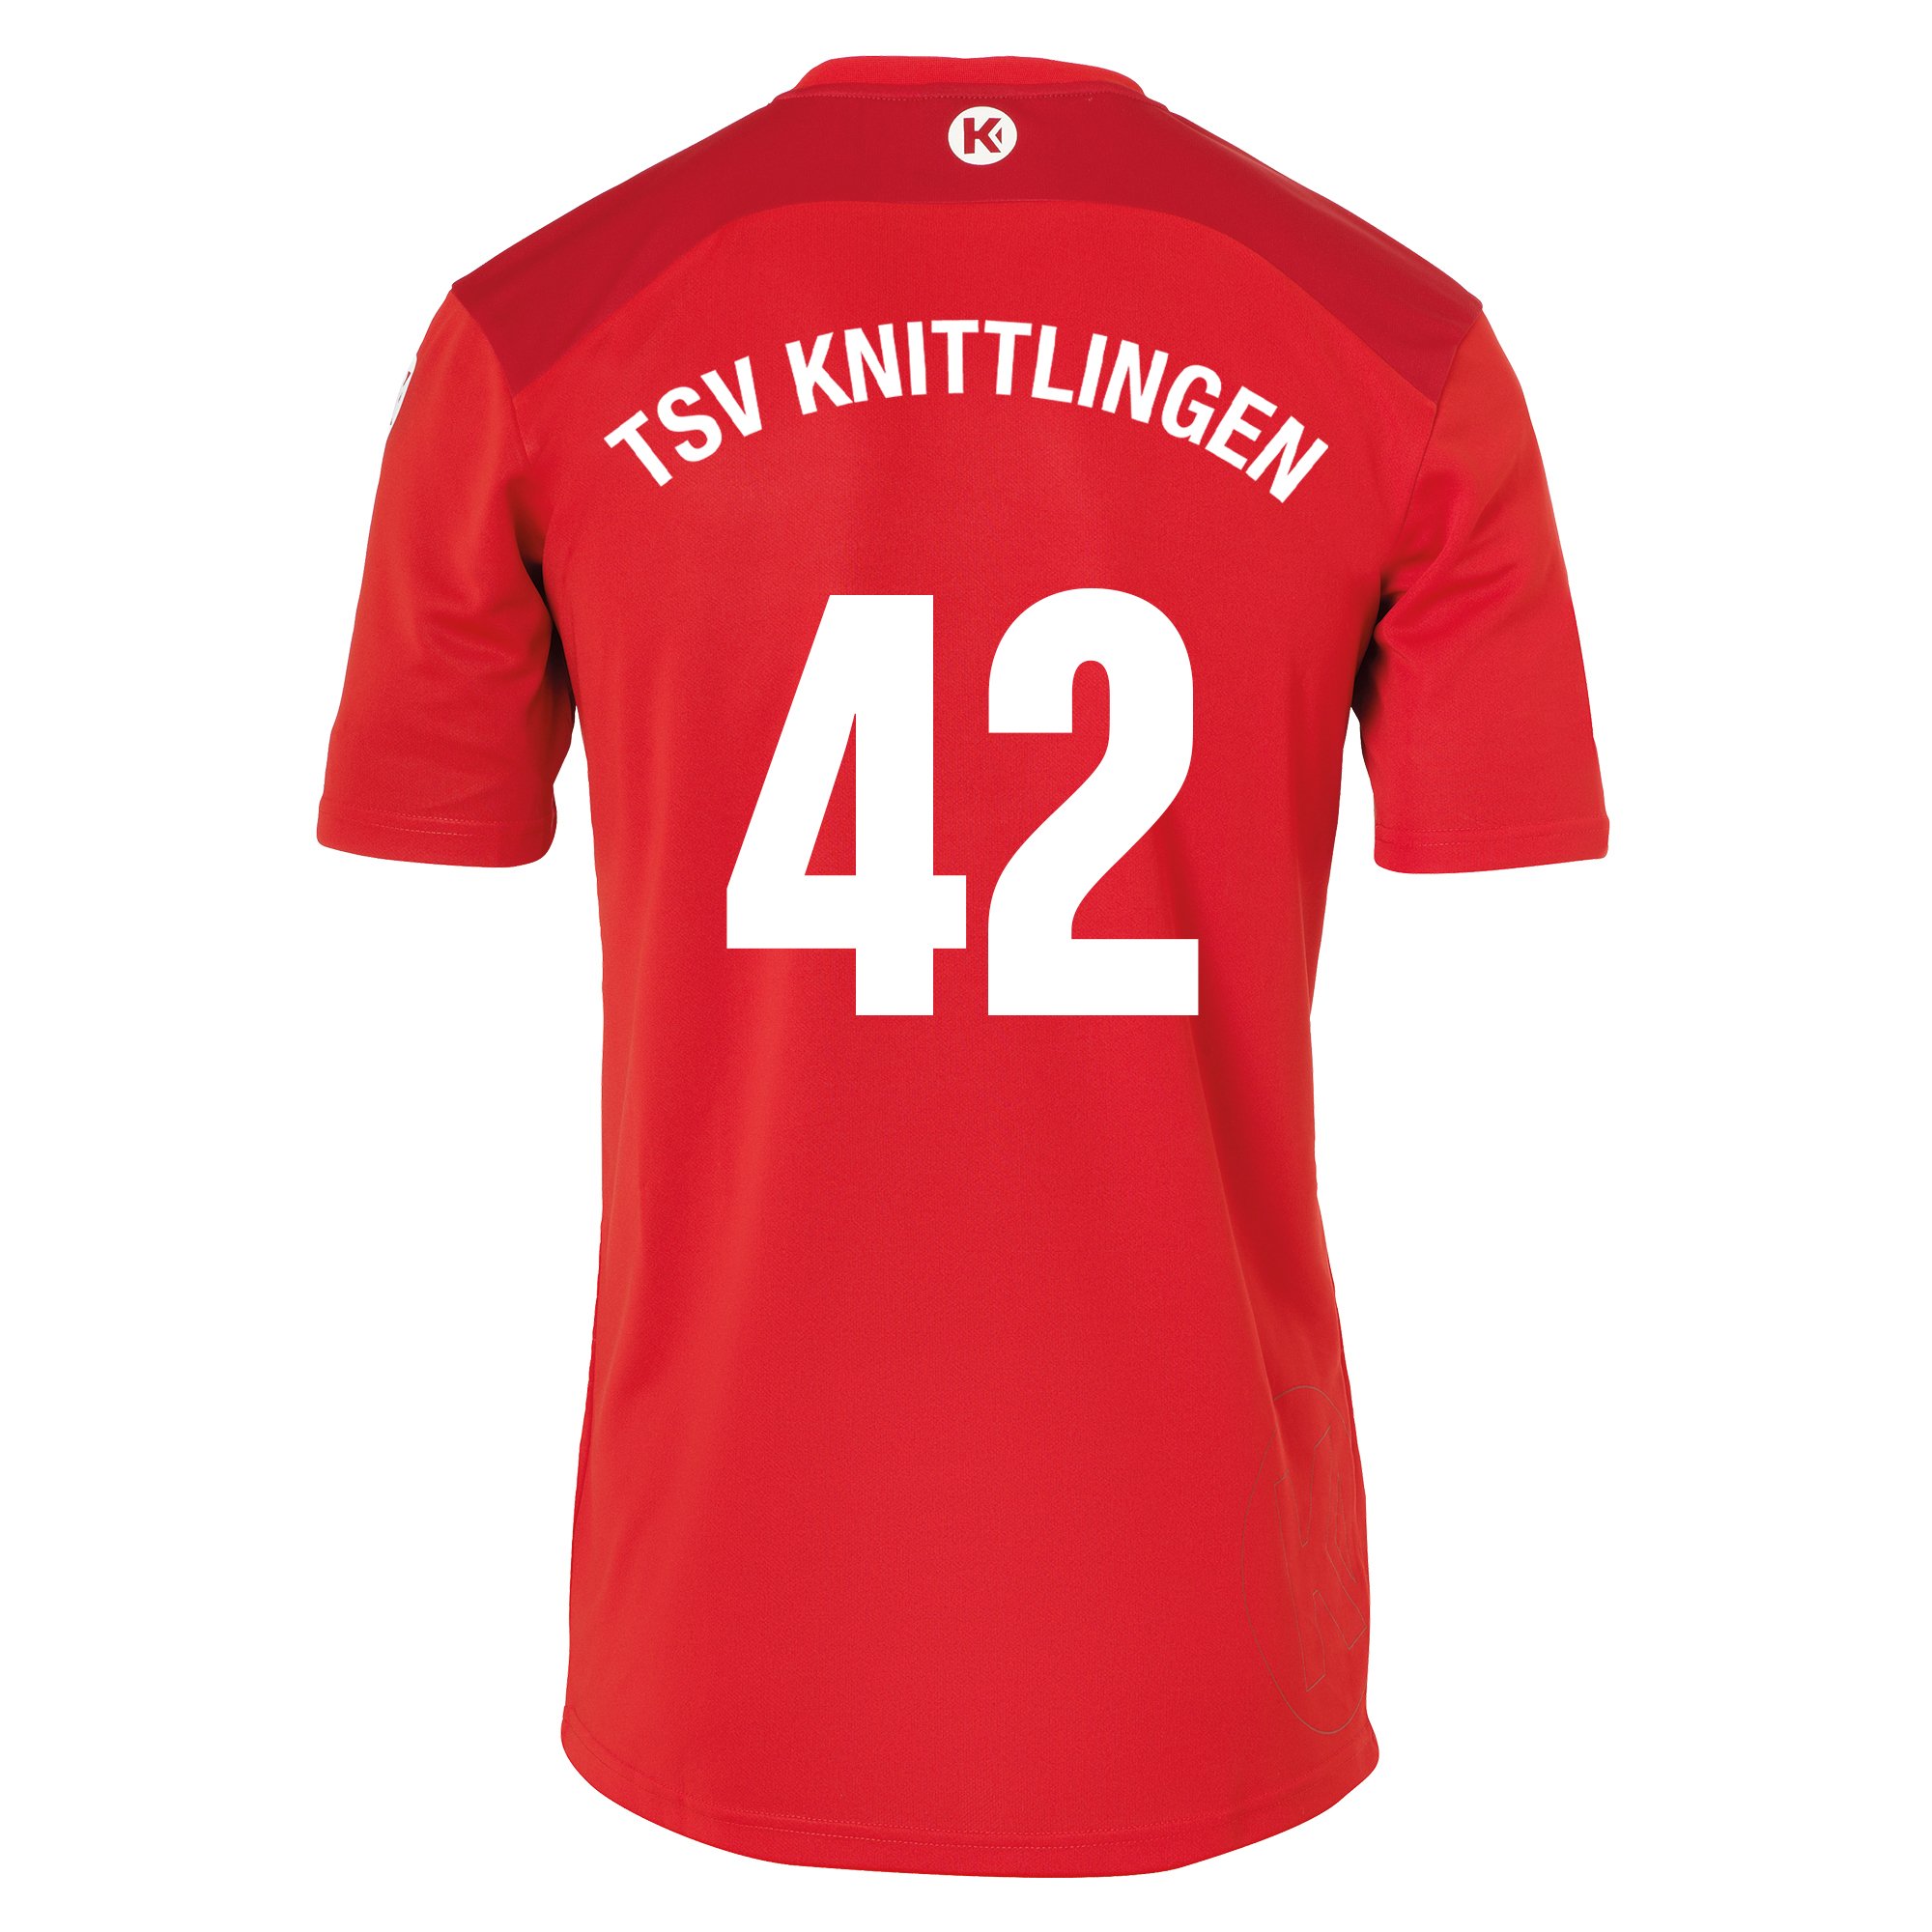 TSV Knittlingen Trikot Herren